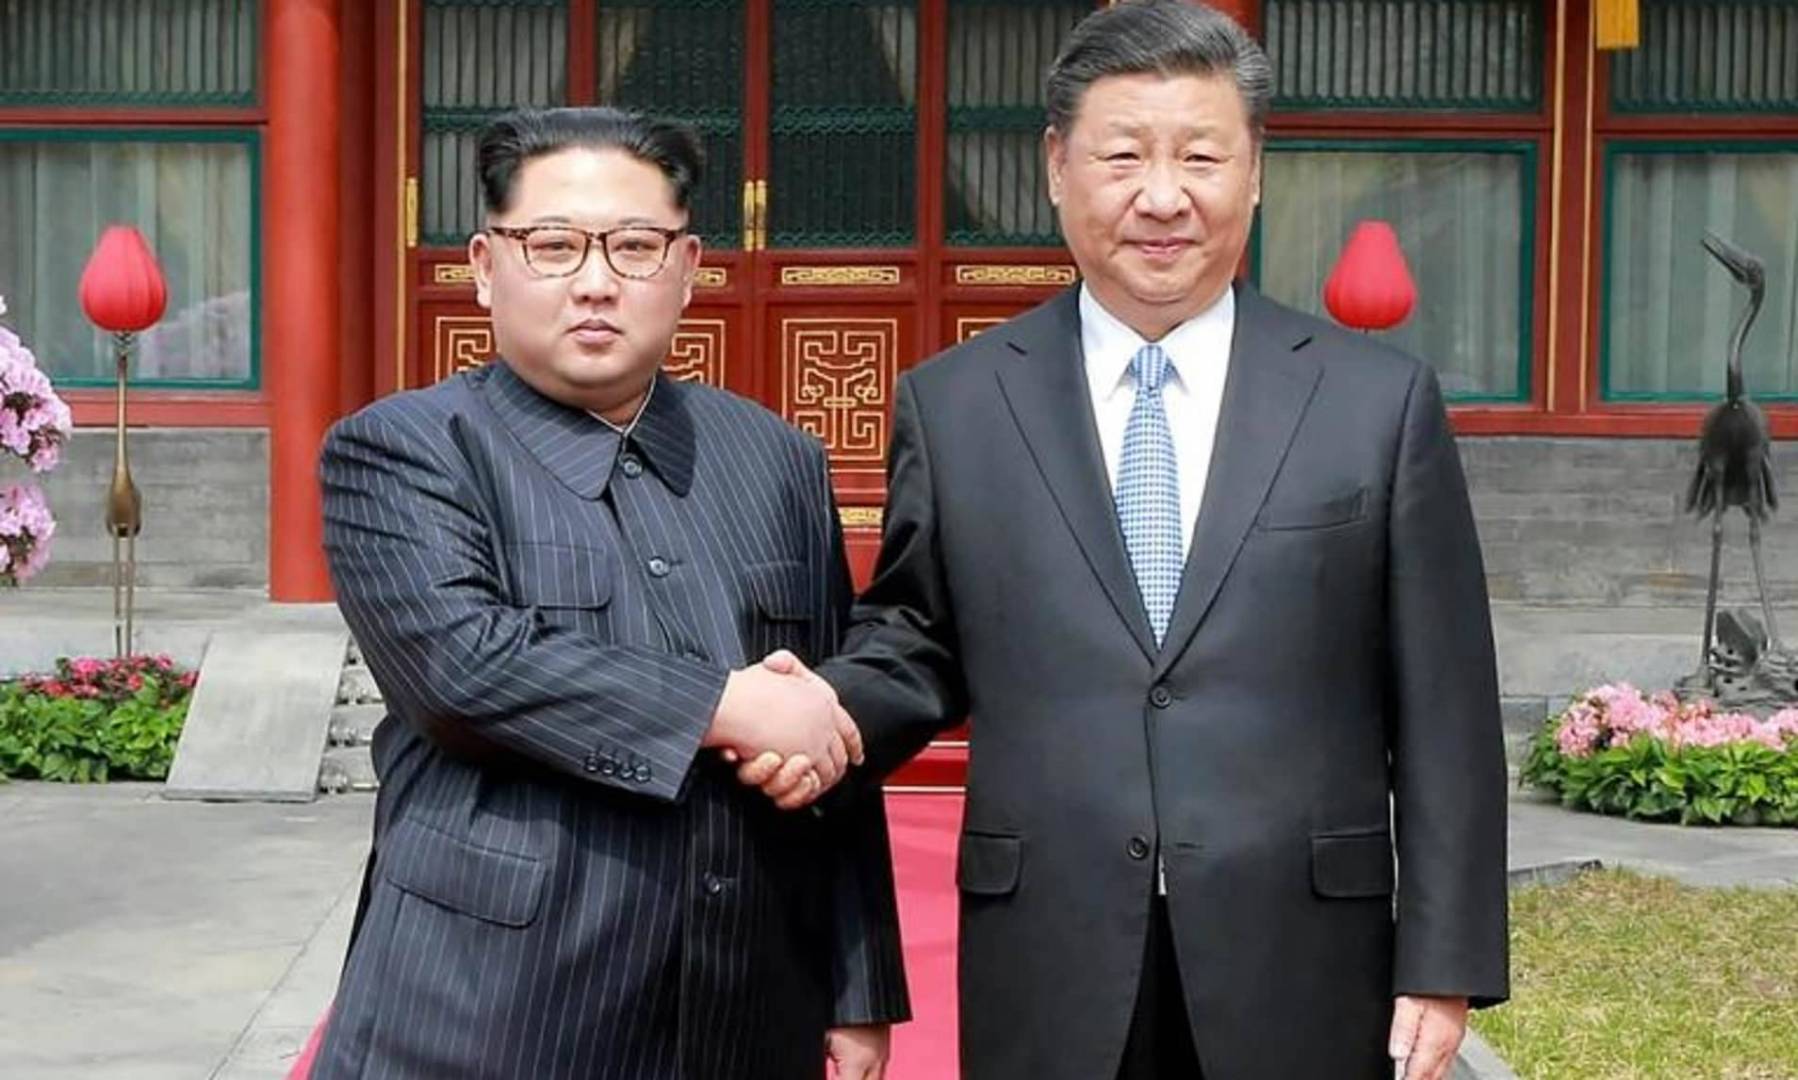 زعيما كوريا الشمالية والصين